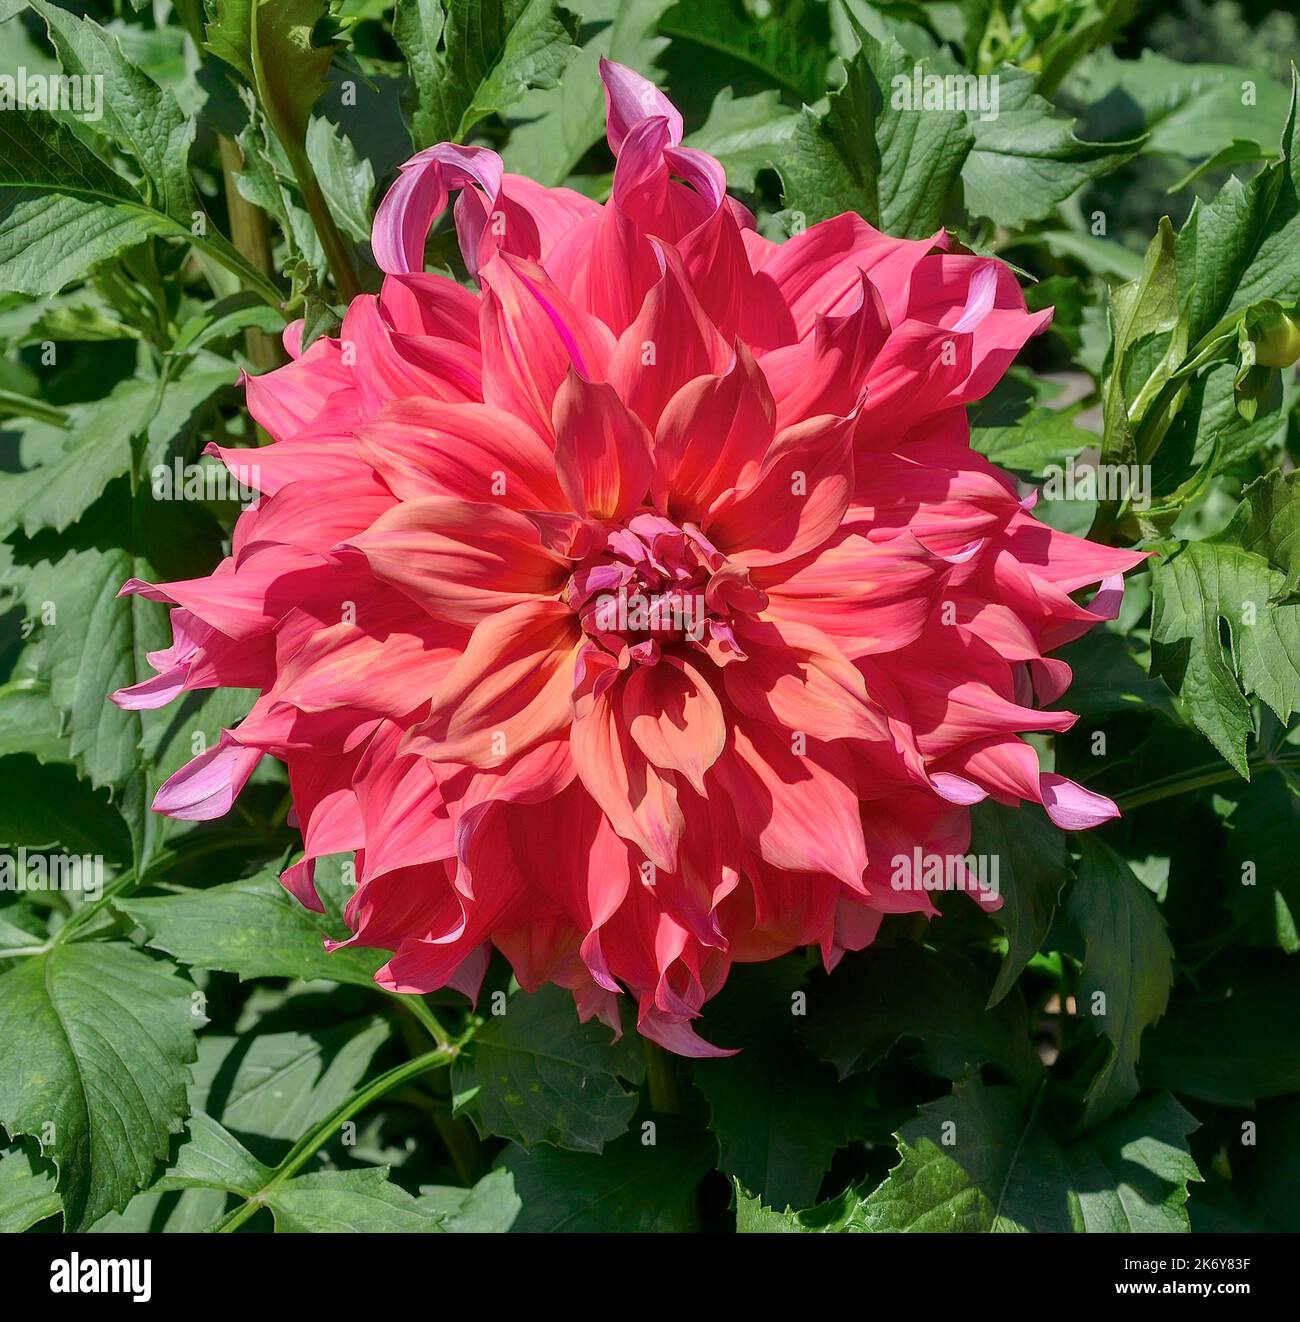 Sehr dekorativ, herrlich zarte rosa-violette Dahlia-Blume, Variety Islander. Wunderschöner riesiger, großblühiger herbstlicher Doppeldahlia-Blütenkopf Stockfoto